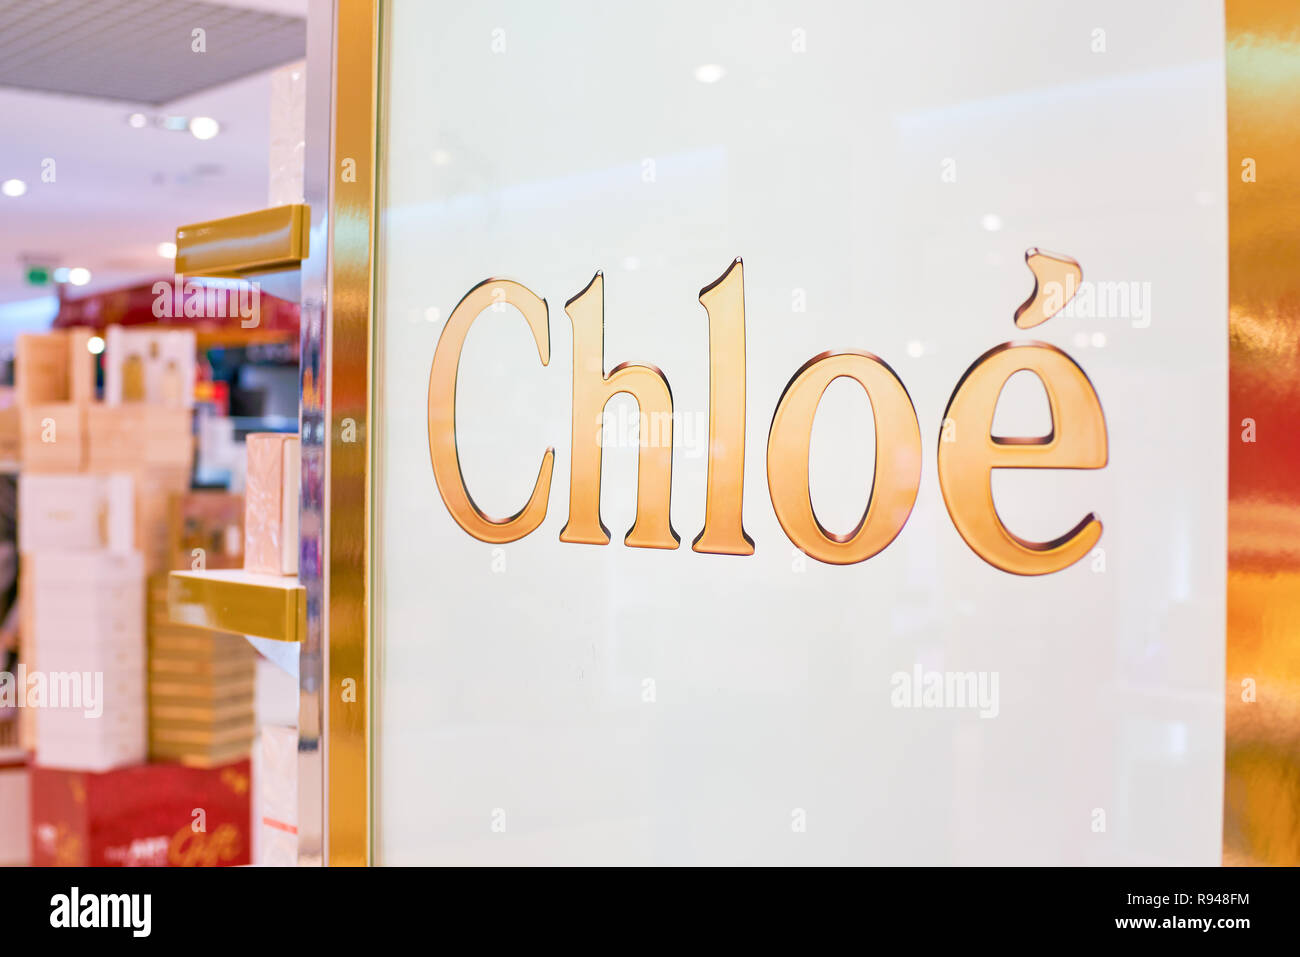 WARSAW, POLAND - CIRCA NOVEMBER, 2017: iclose up shot of Chloe sign at Duty  Free store at Warsaw Chopin Airport Stock Photo - Alamy